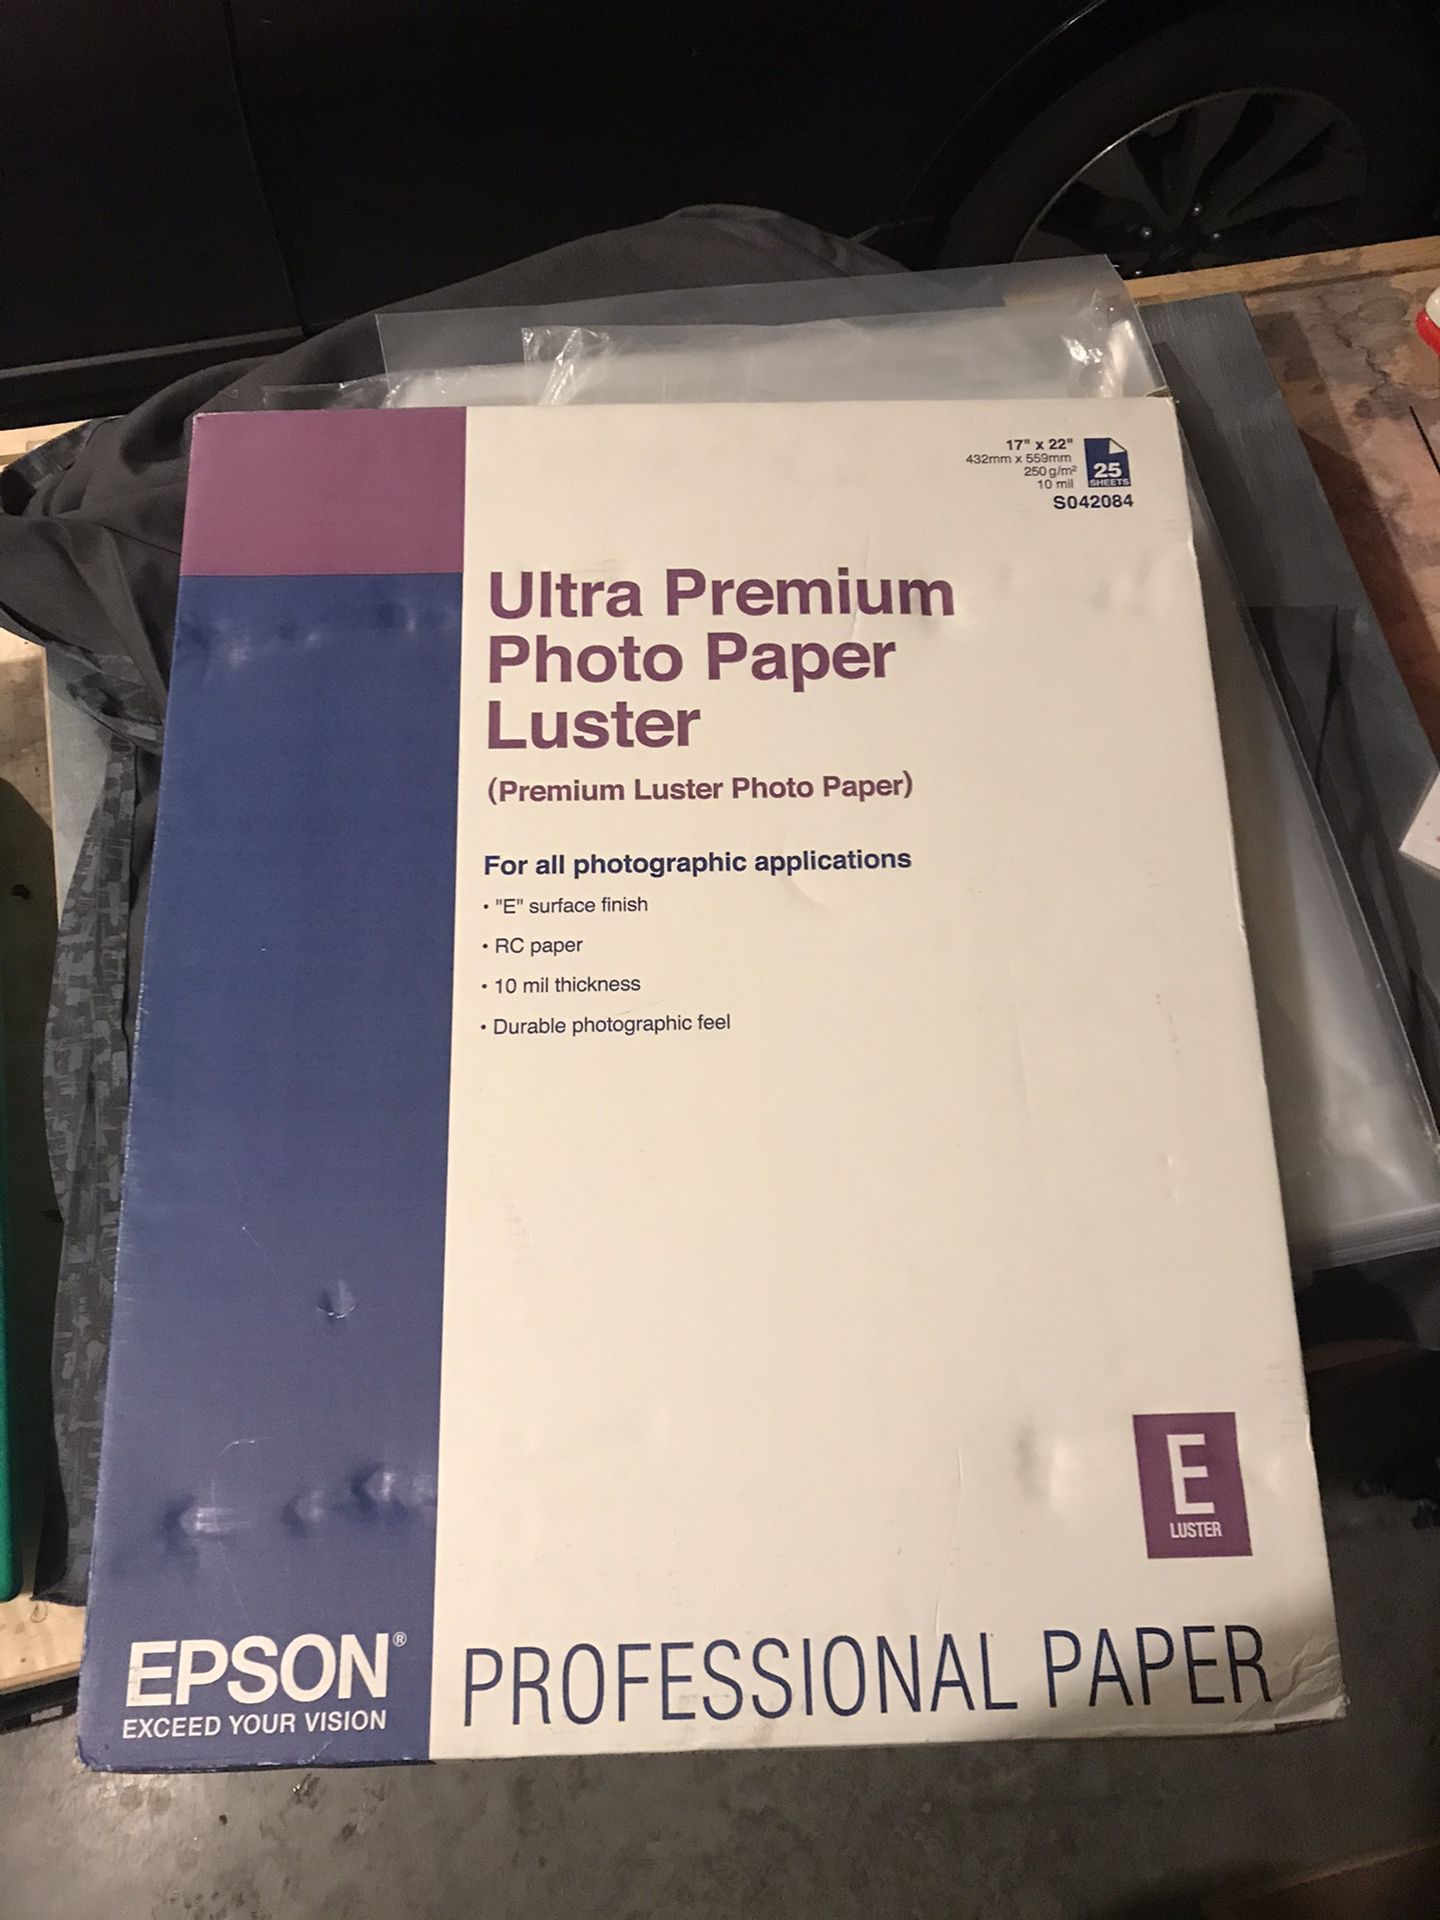 Epson Premium Luster Photo Paper 17”x22”